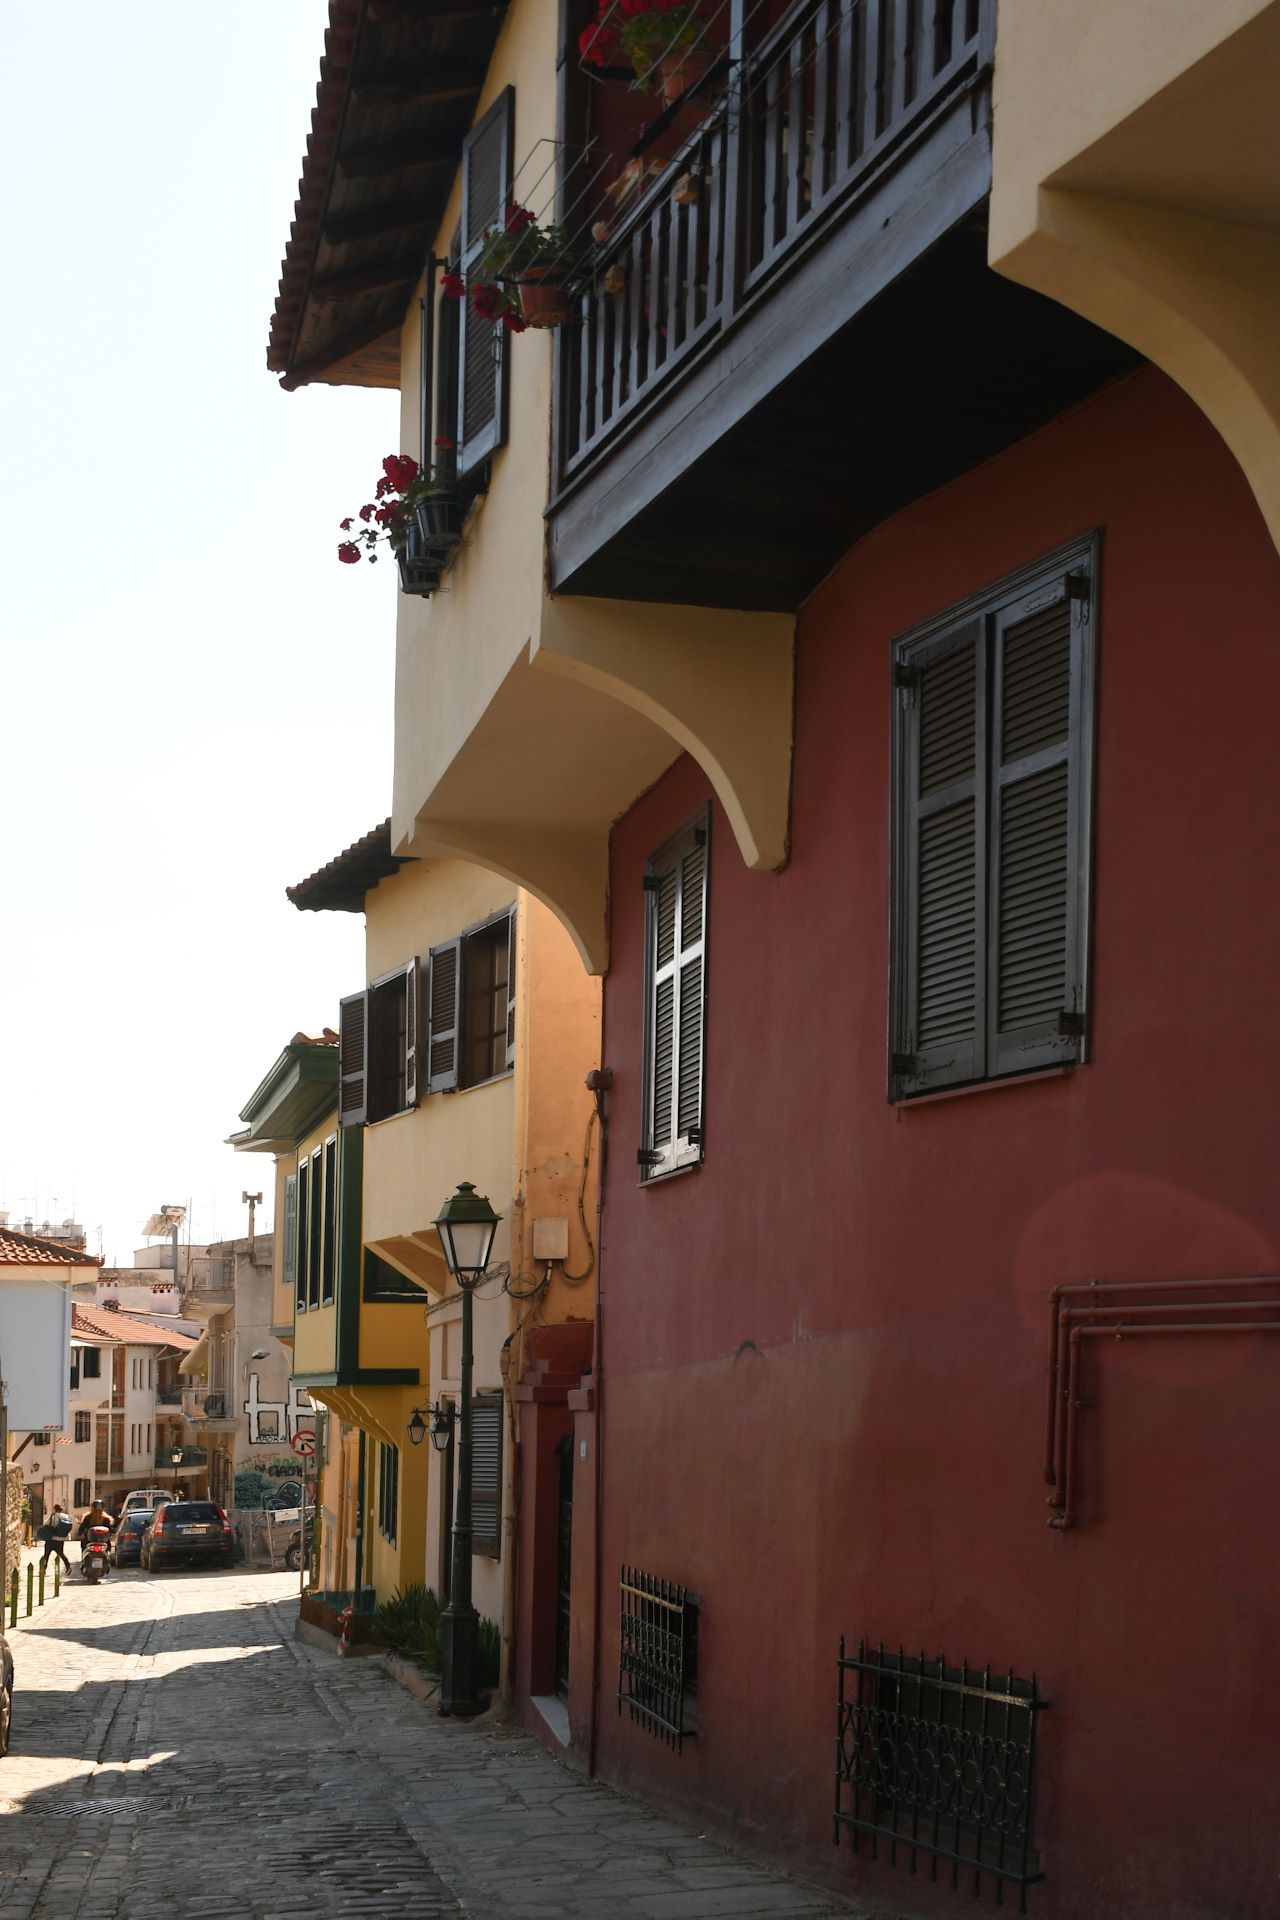 Häuser im Oberen Stadtbereich mit osmanischem Stileinfluss